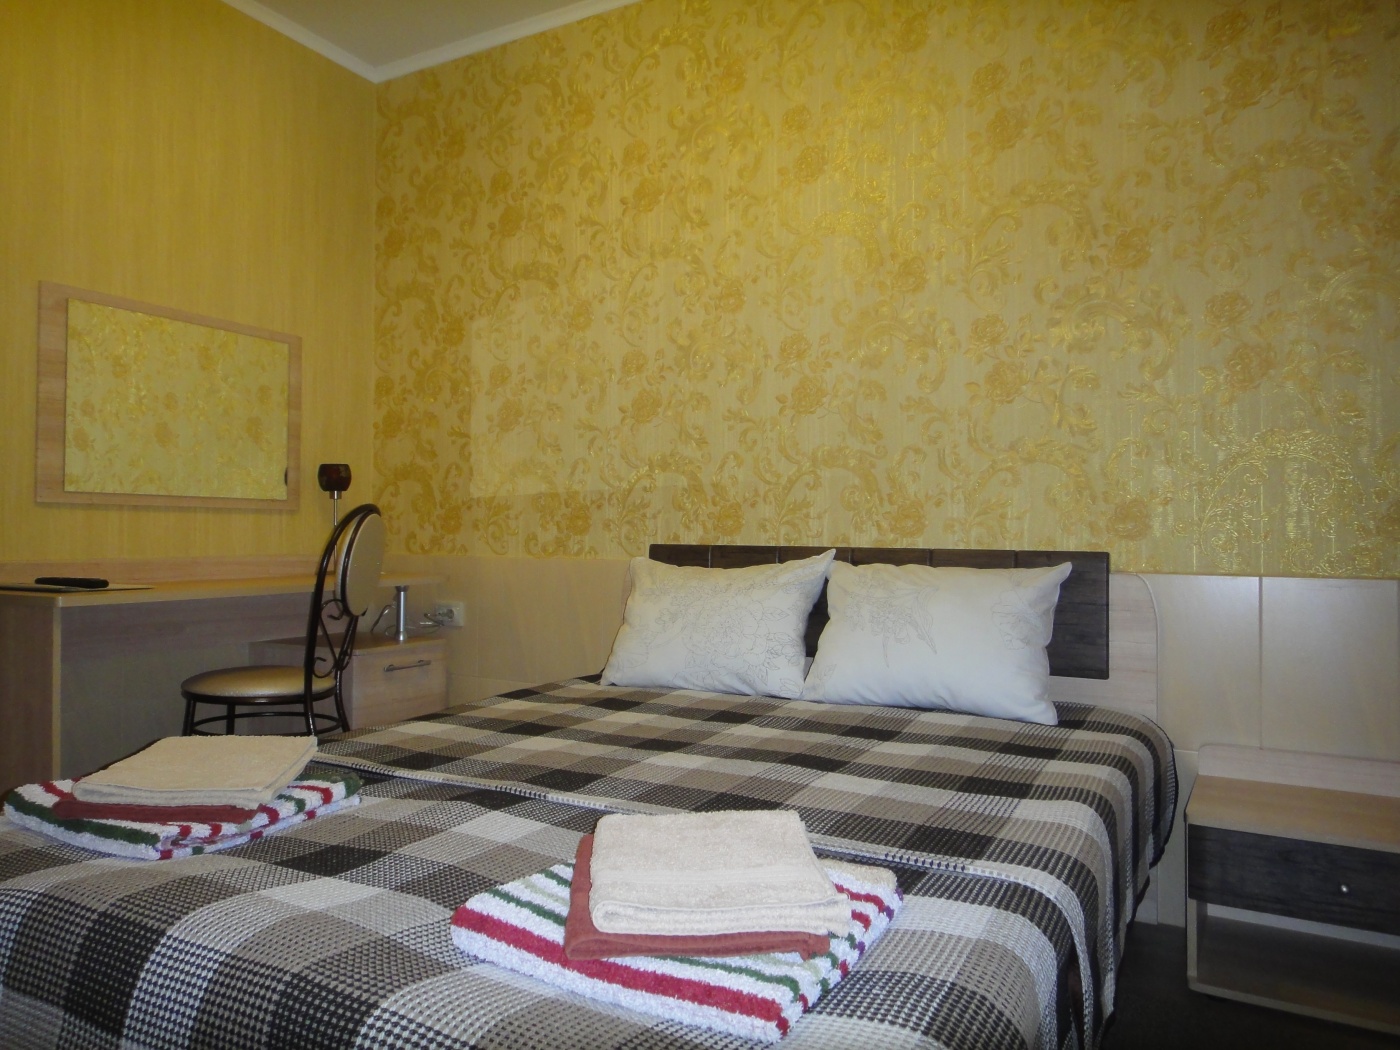  Отель «Семязино» Владимирская область 2-местный номер «Стандарт», фото 1